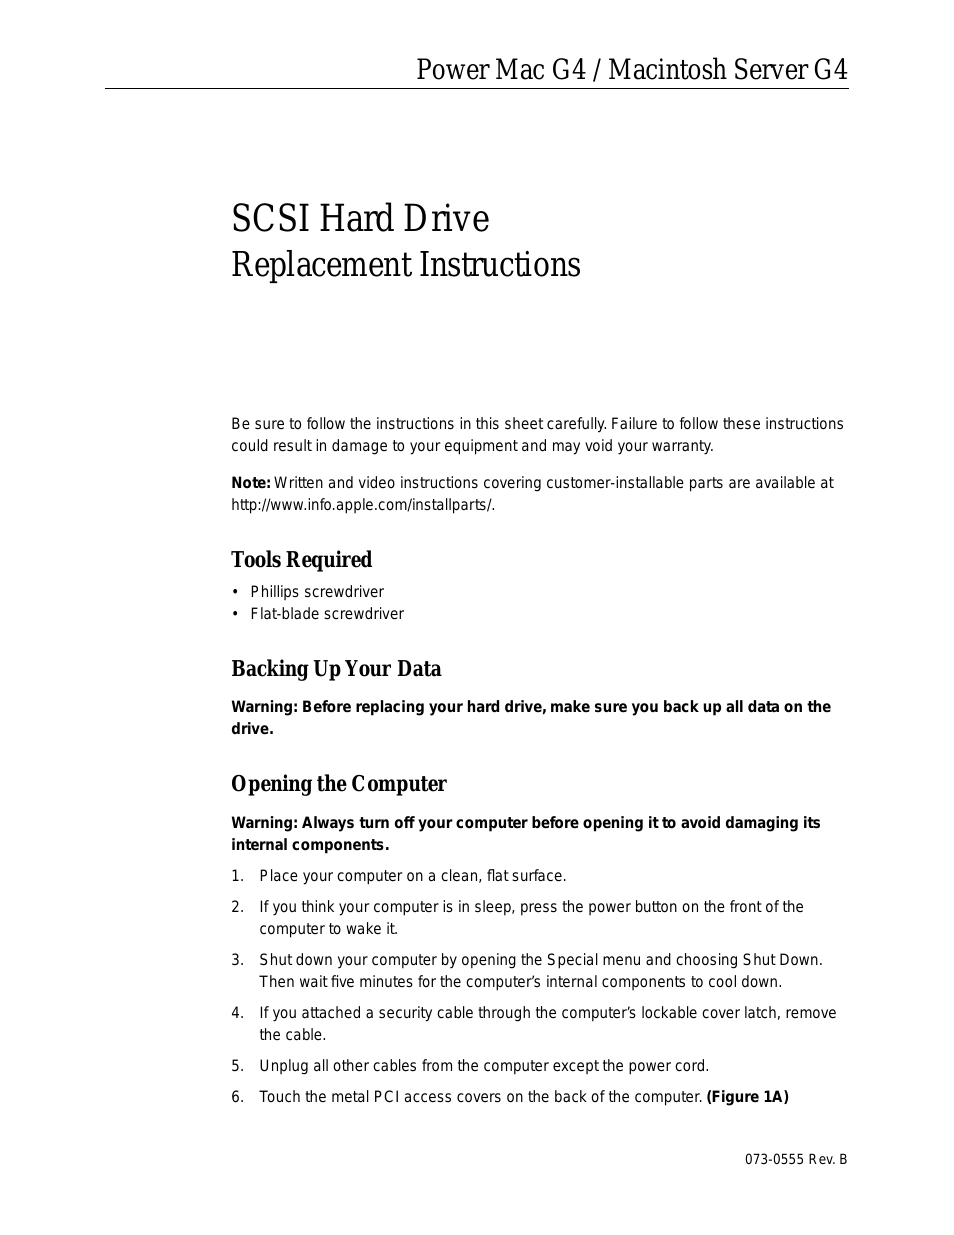 SCSI Hard Drive